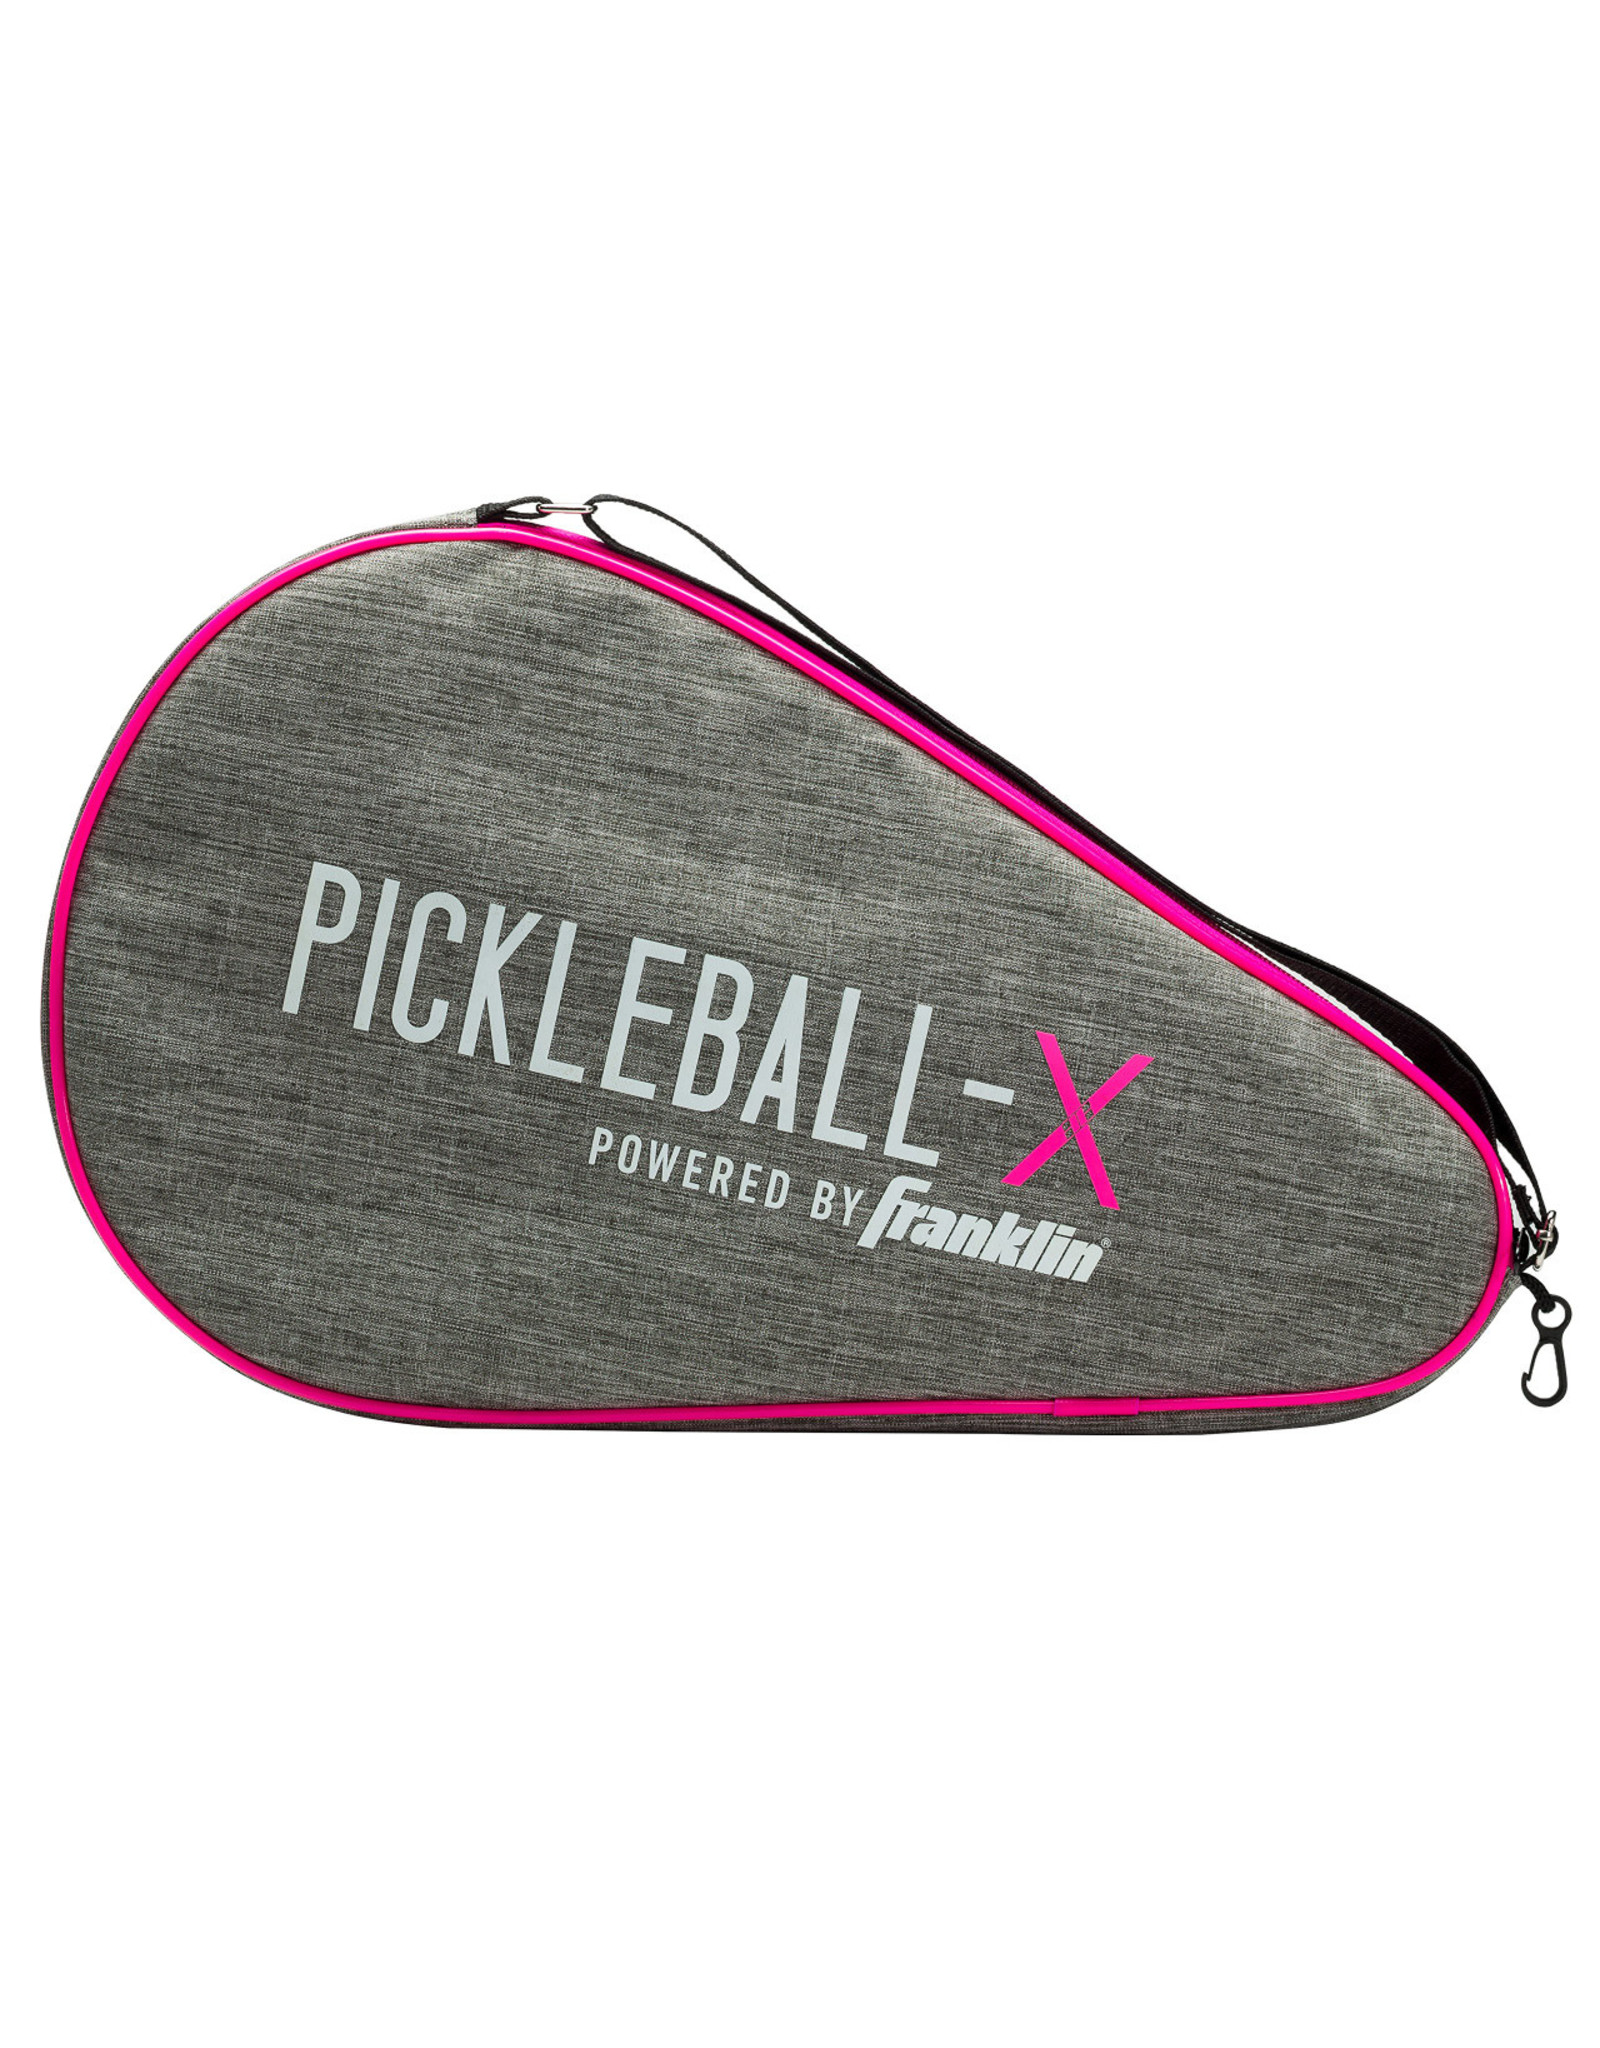 Franklin Pickleball Paddle Bag (Grey/Pink)